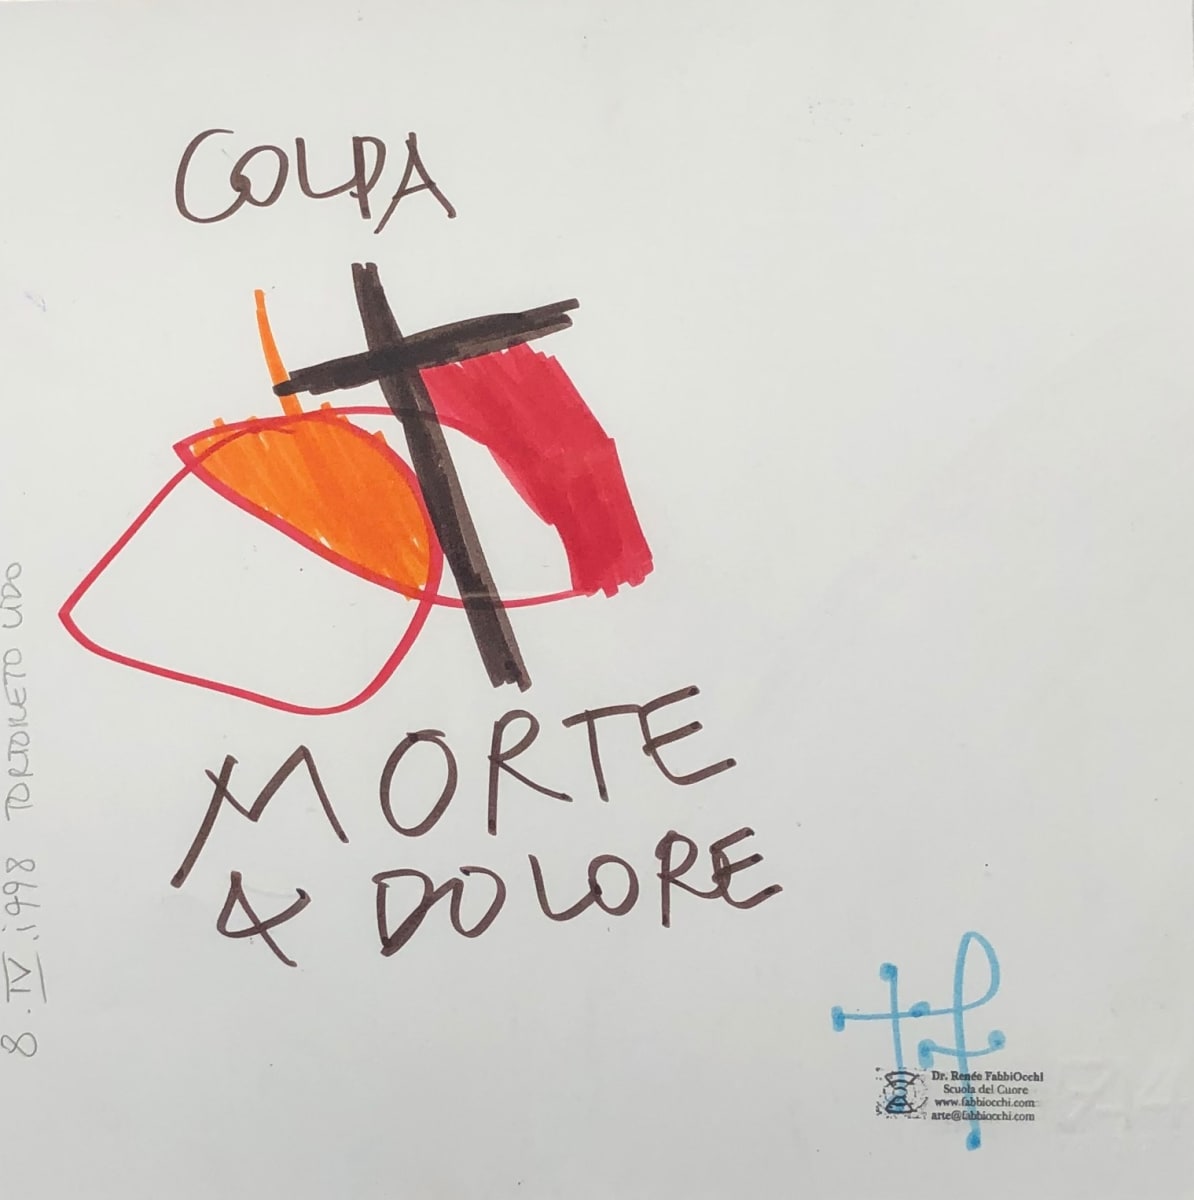 Colpa, Morte & Dolore by Renee Fabbiocchi 